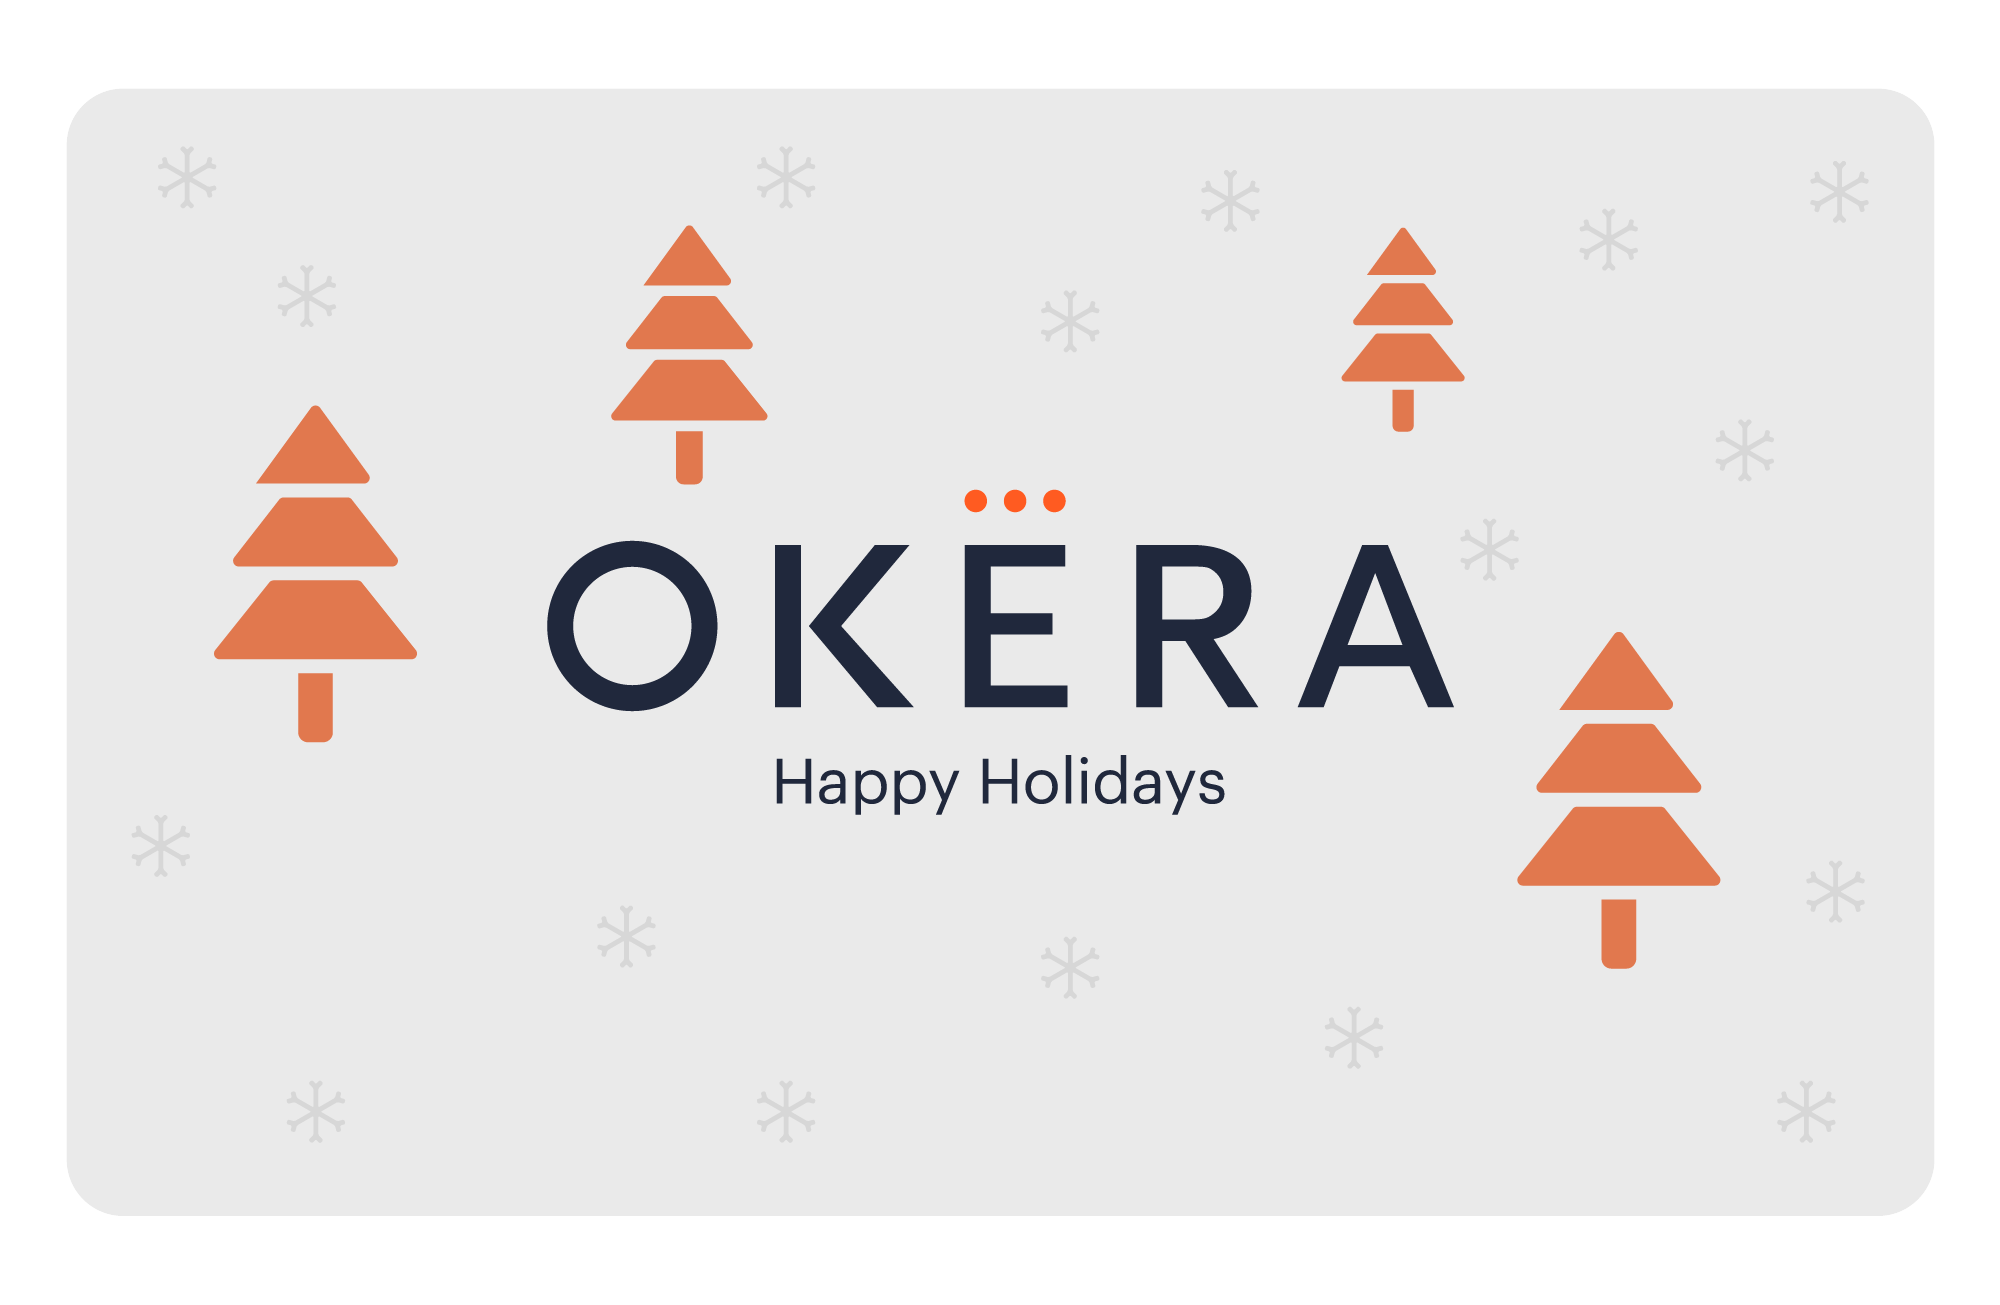 Happy Holidays from Okera